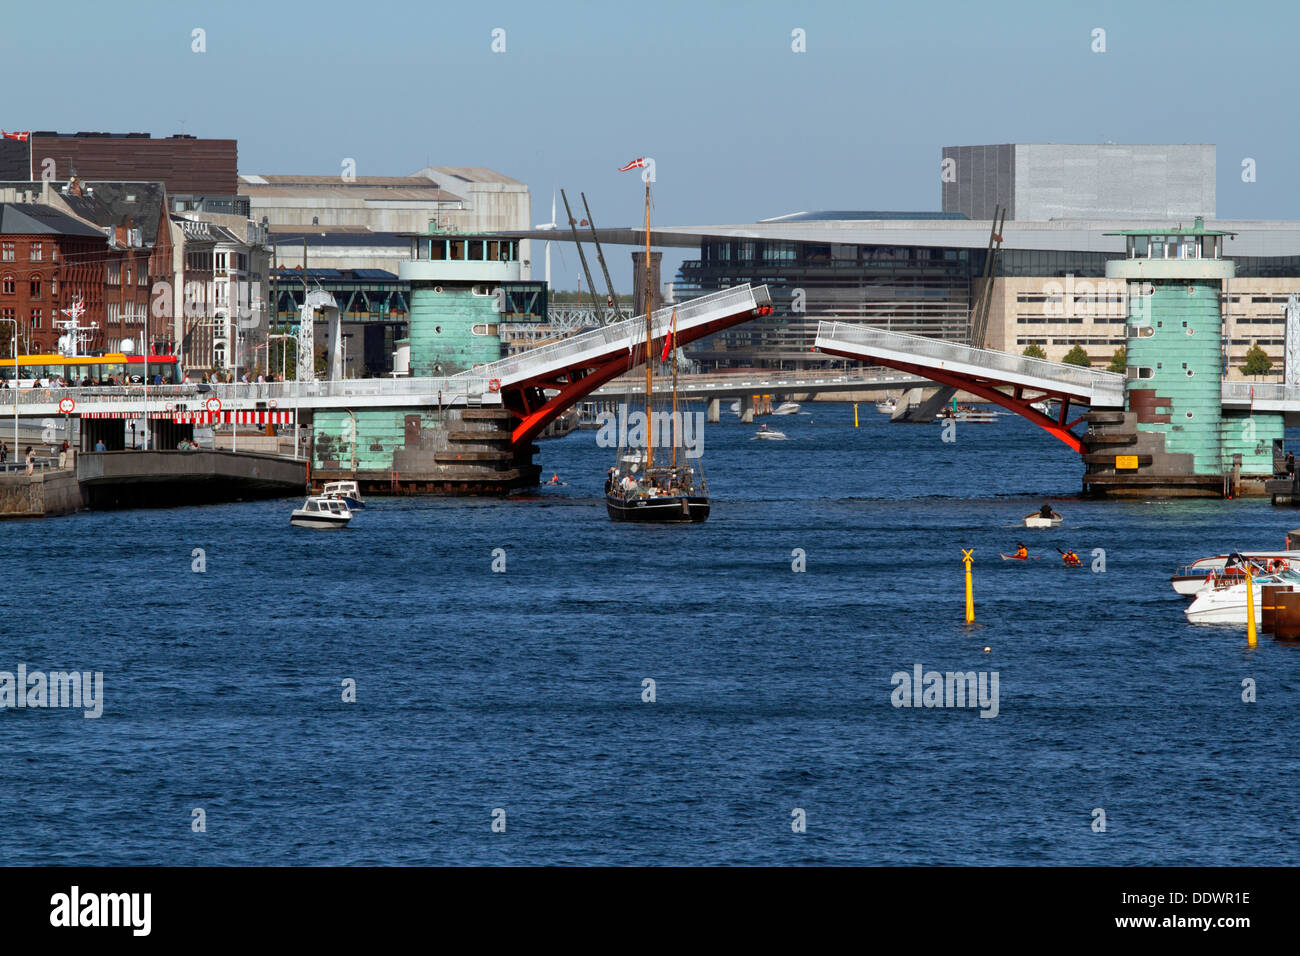 Die Galeassen Anne Marie durchläuft die offene Knippelsbro Brücke im Hafen von Kopenhagen. Das Royal Opera House im Hintergrund. Kopenhagen, Dänemark. Stockfoto